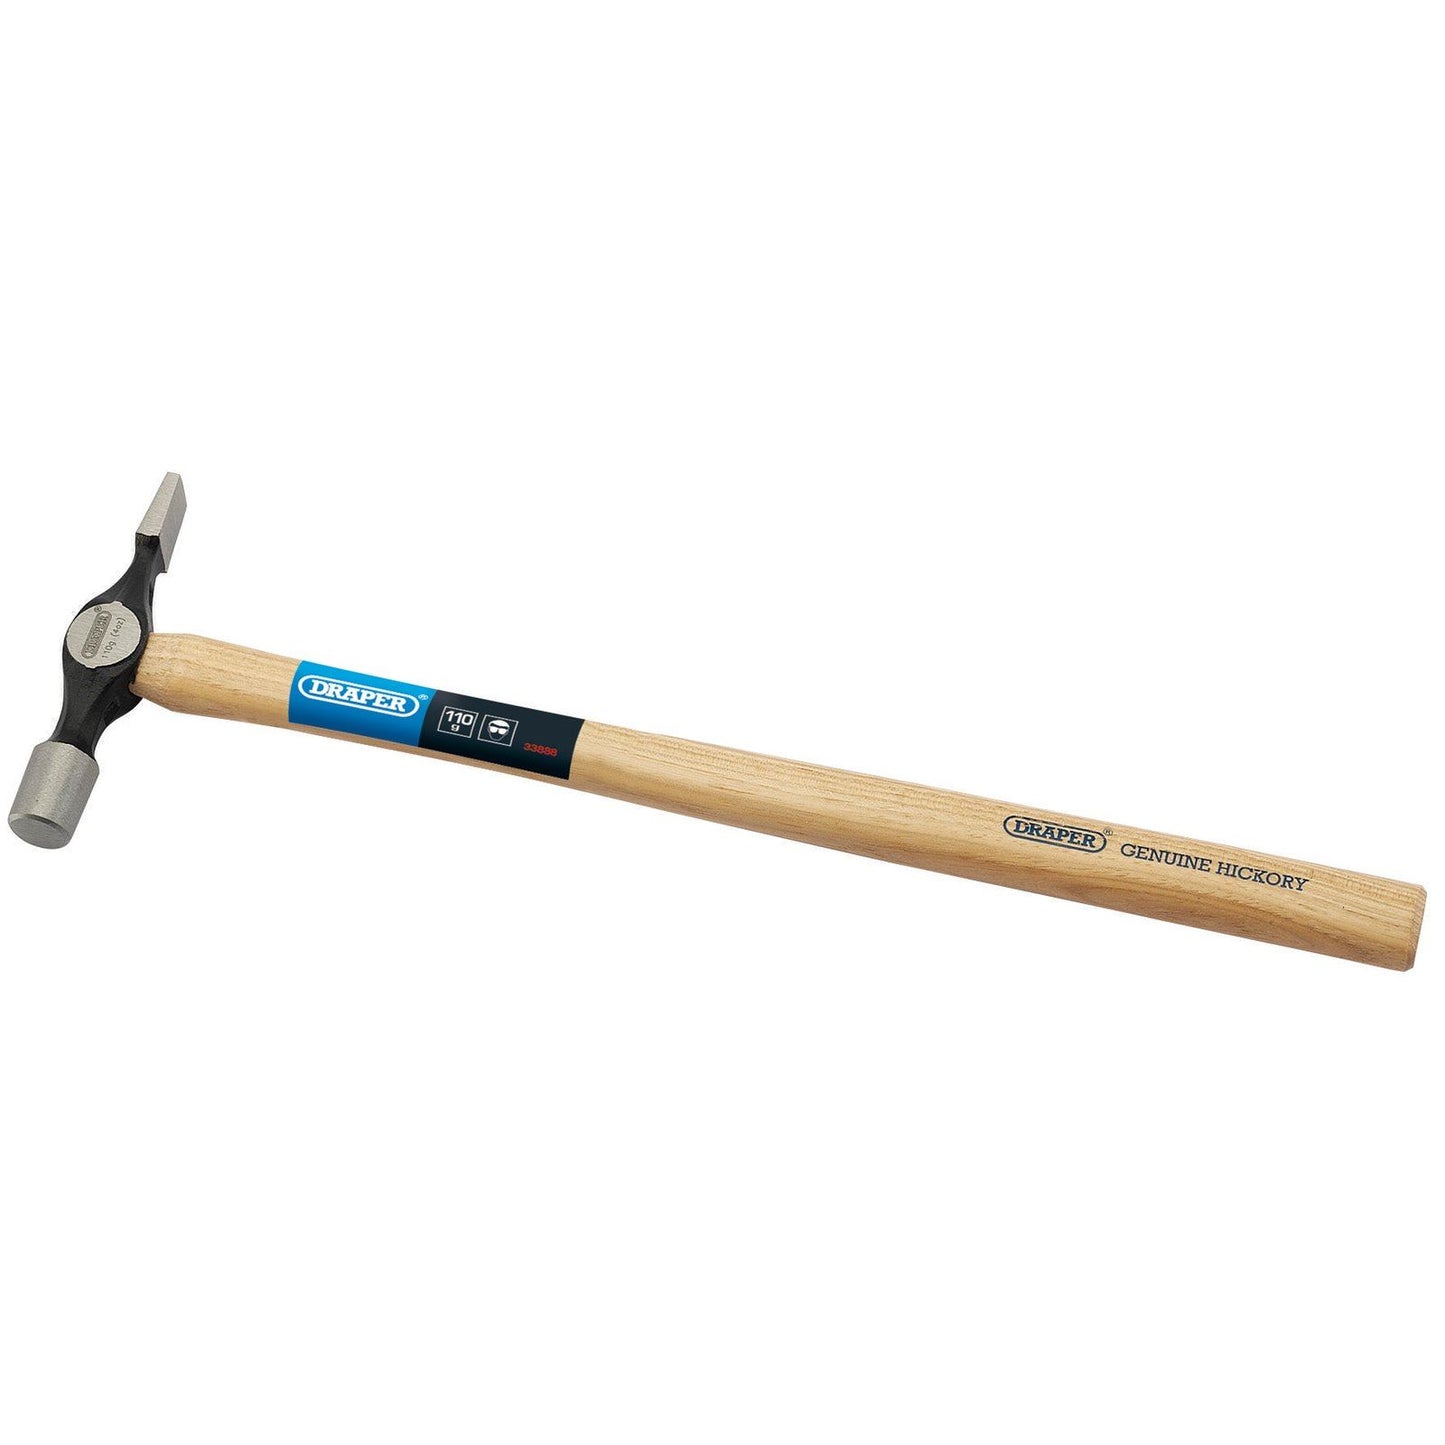 Draper 1x 110G 4oz Cross Pein Pin Hammer Garage Professional Standard Tool - 33888